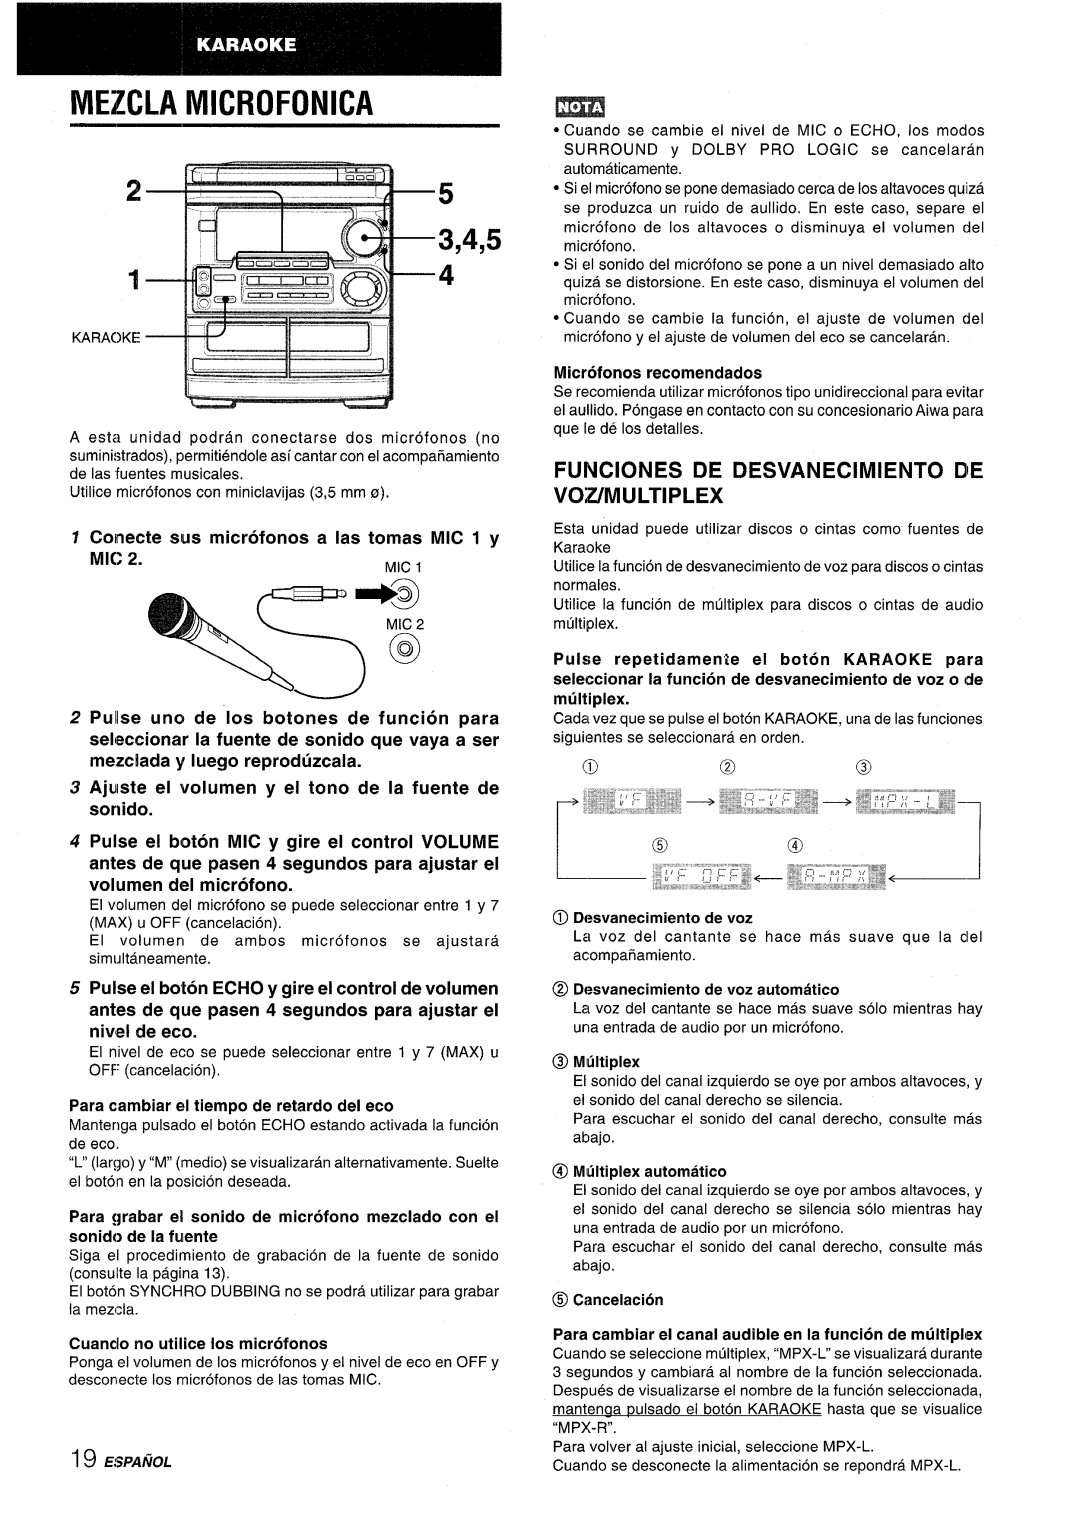 Aiwa CX-NMT50 manual Mezcla Microfonica, 3,4,5, Funciones De Desvanecimiento Die Vozmultiplex, Microfonos recomendados 